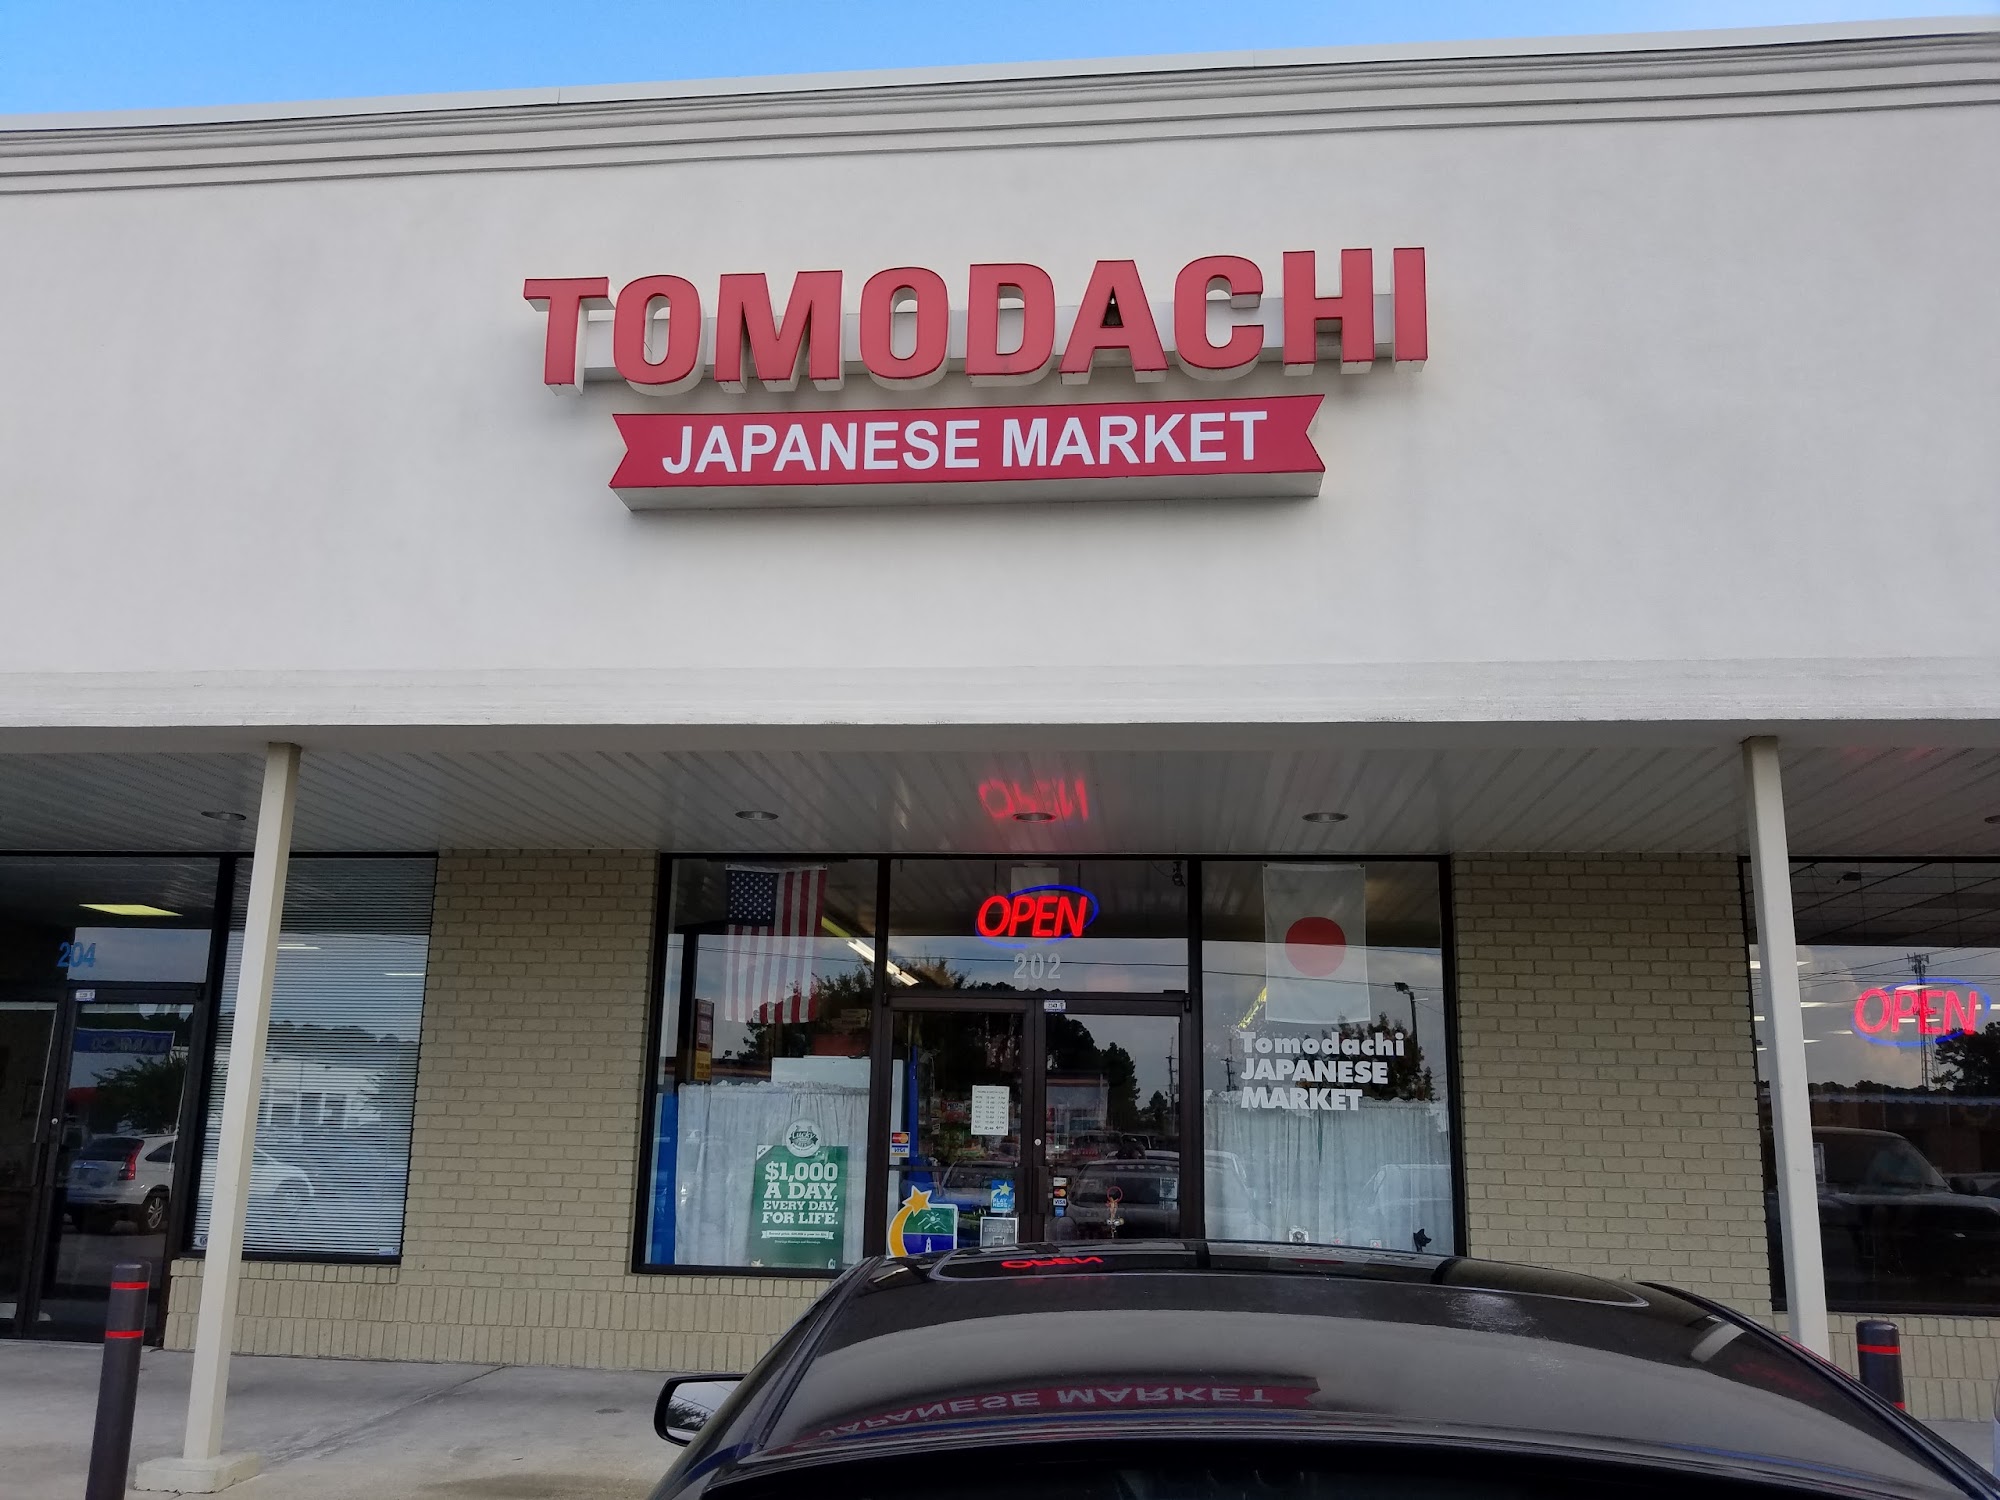 Tomodachi Japanese Market